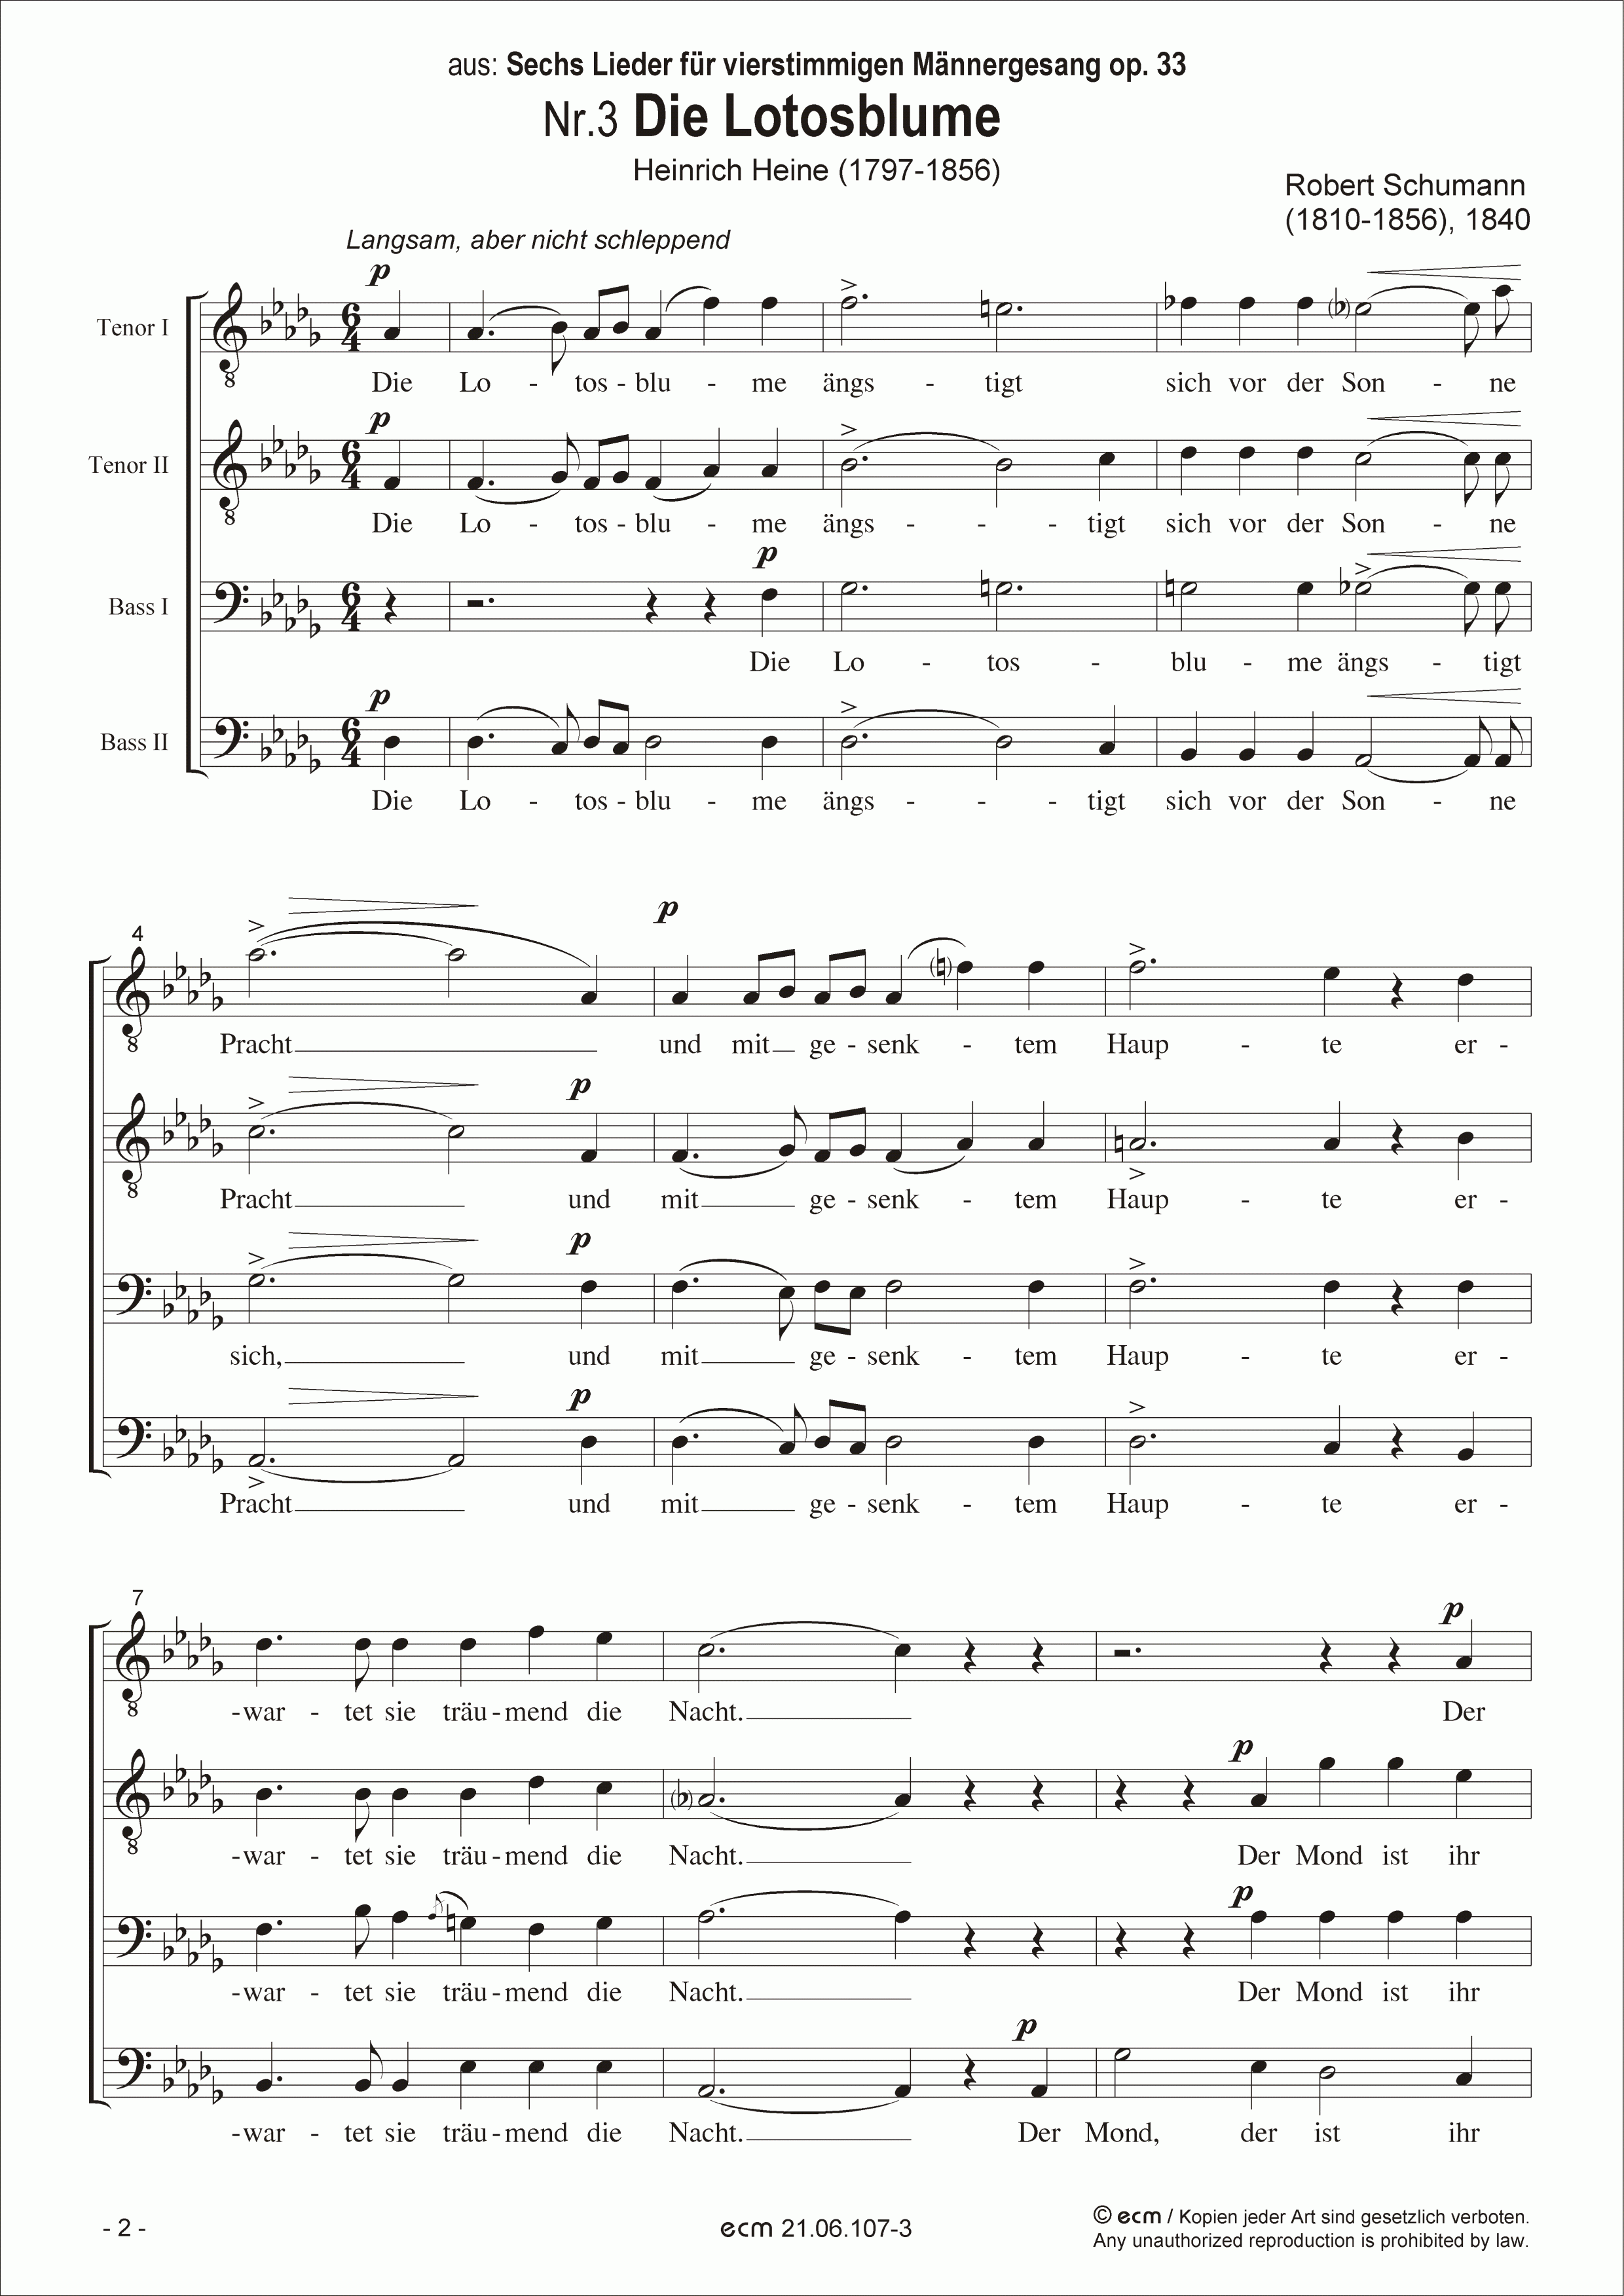 Die Lotosblume (op.33, Nr.3)